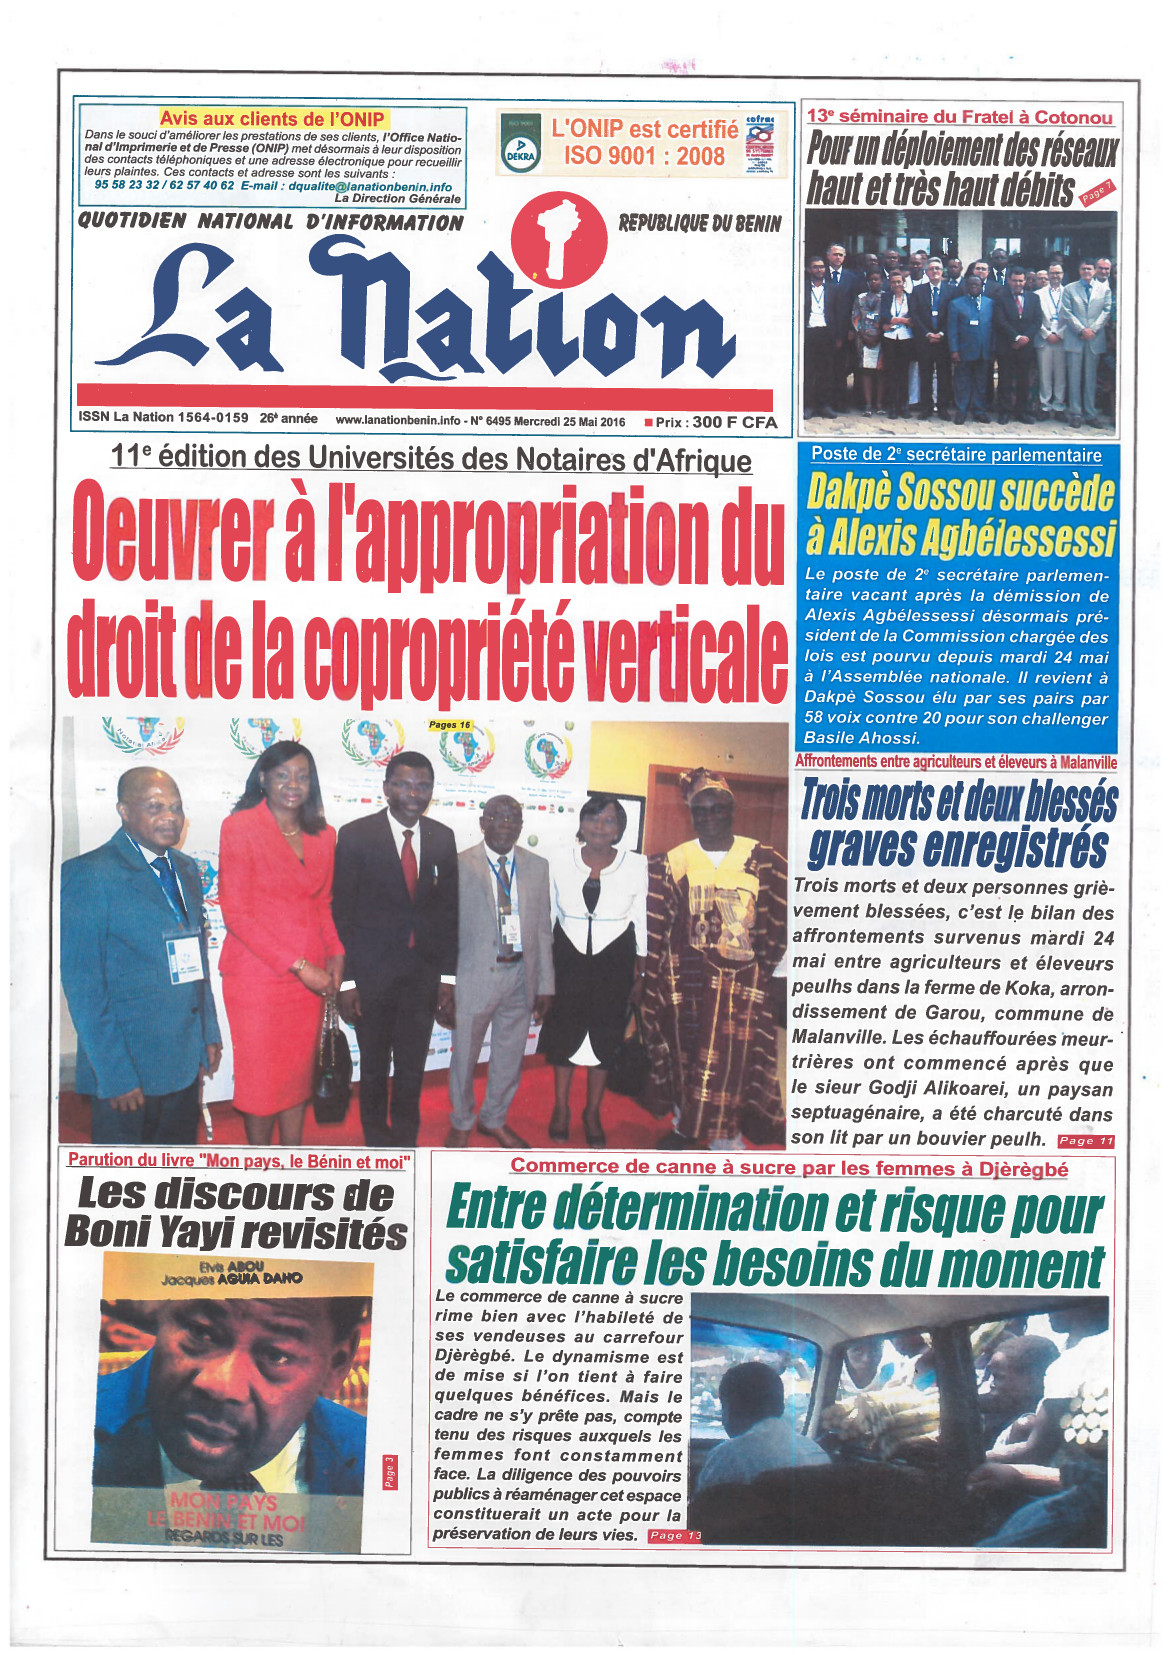 Première page du journal la Nation de la république du Bénin sur l'Université du Notariat d'Afrique à Cotonou